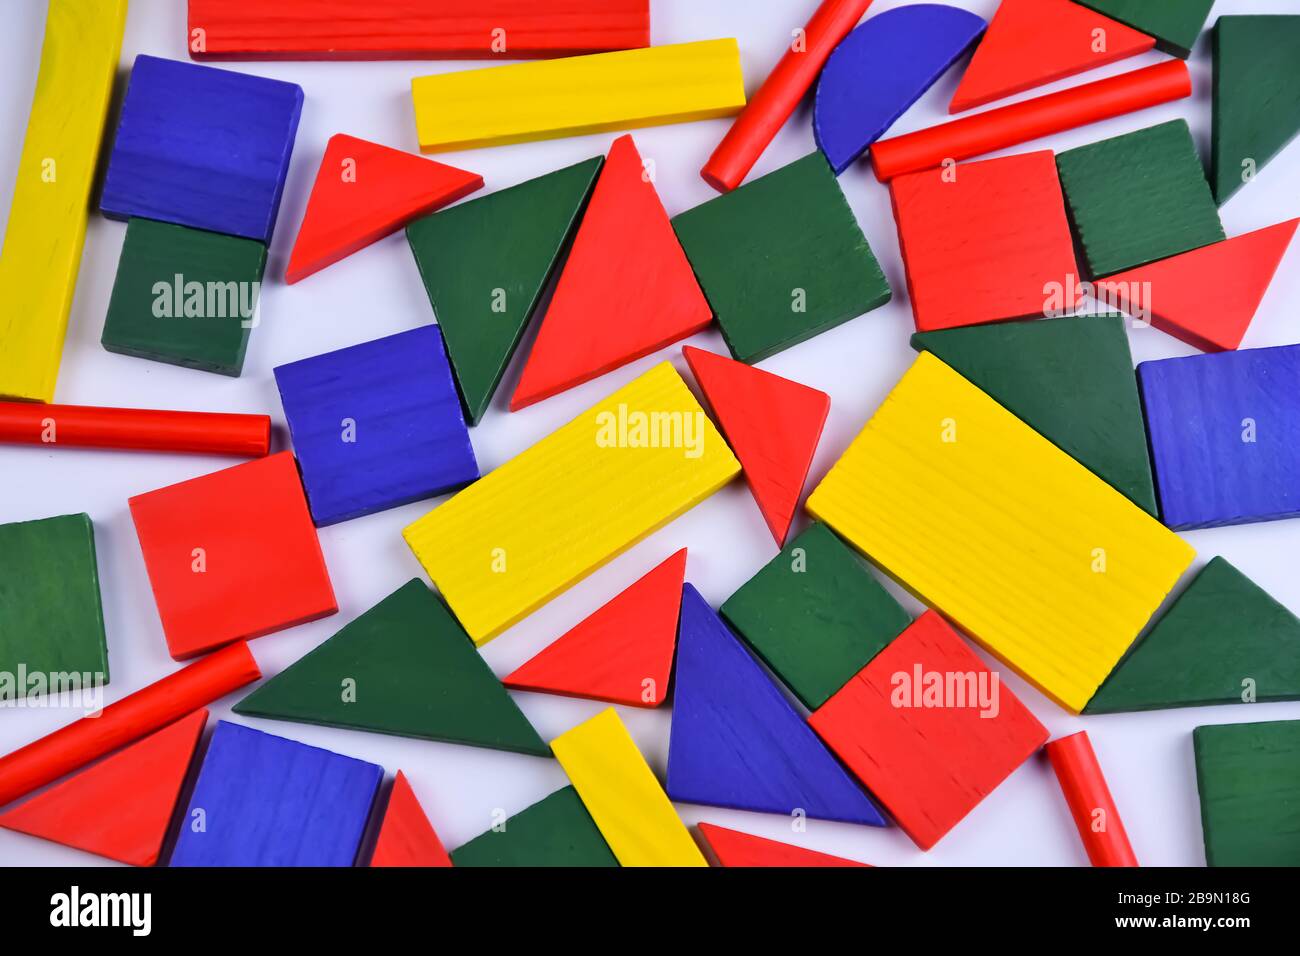 Fond multicolore de petites figures géométriques en bois de différentes couleurs Banque D'Images